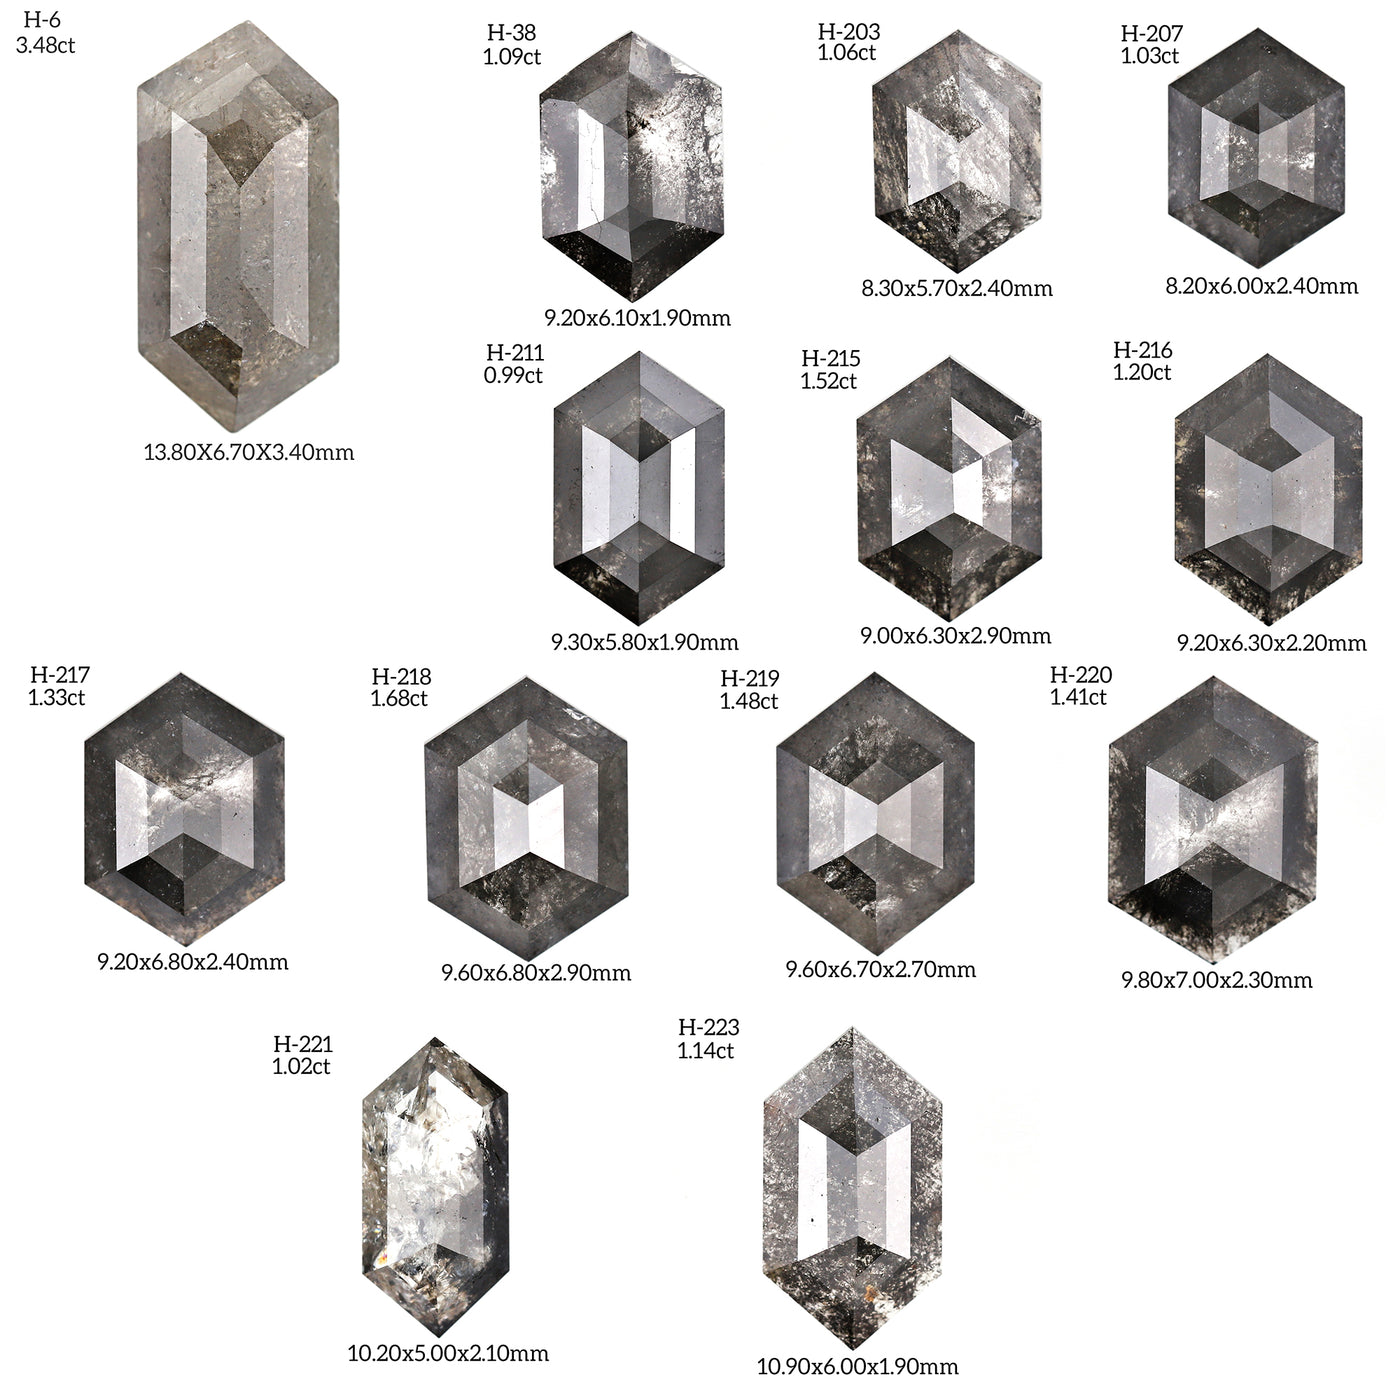 H110 - Salt and pepper hexagon diamond